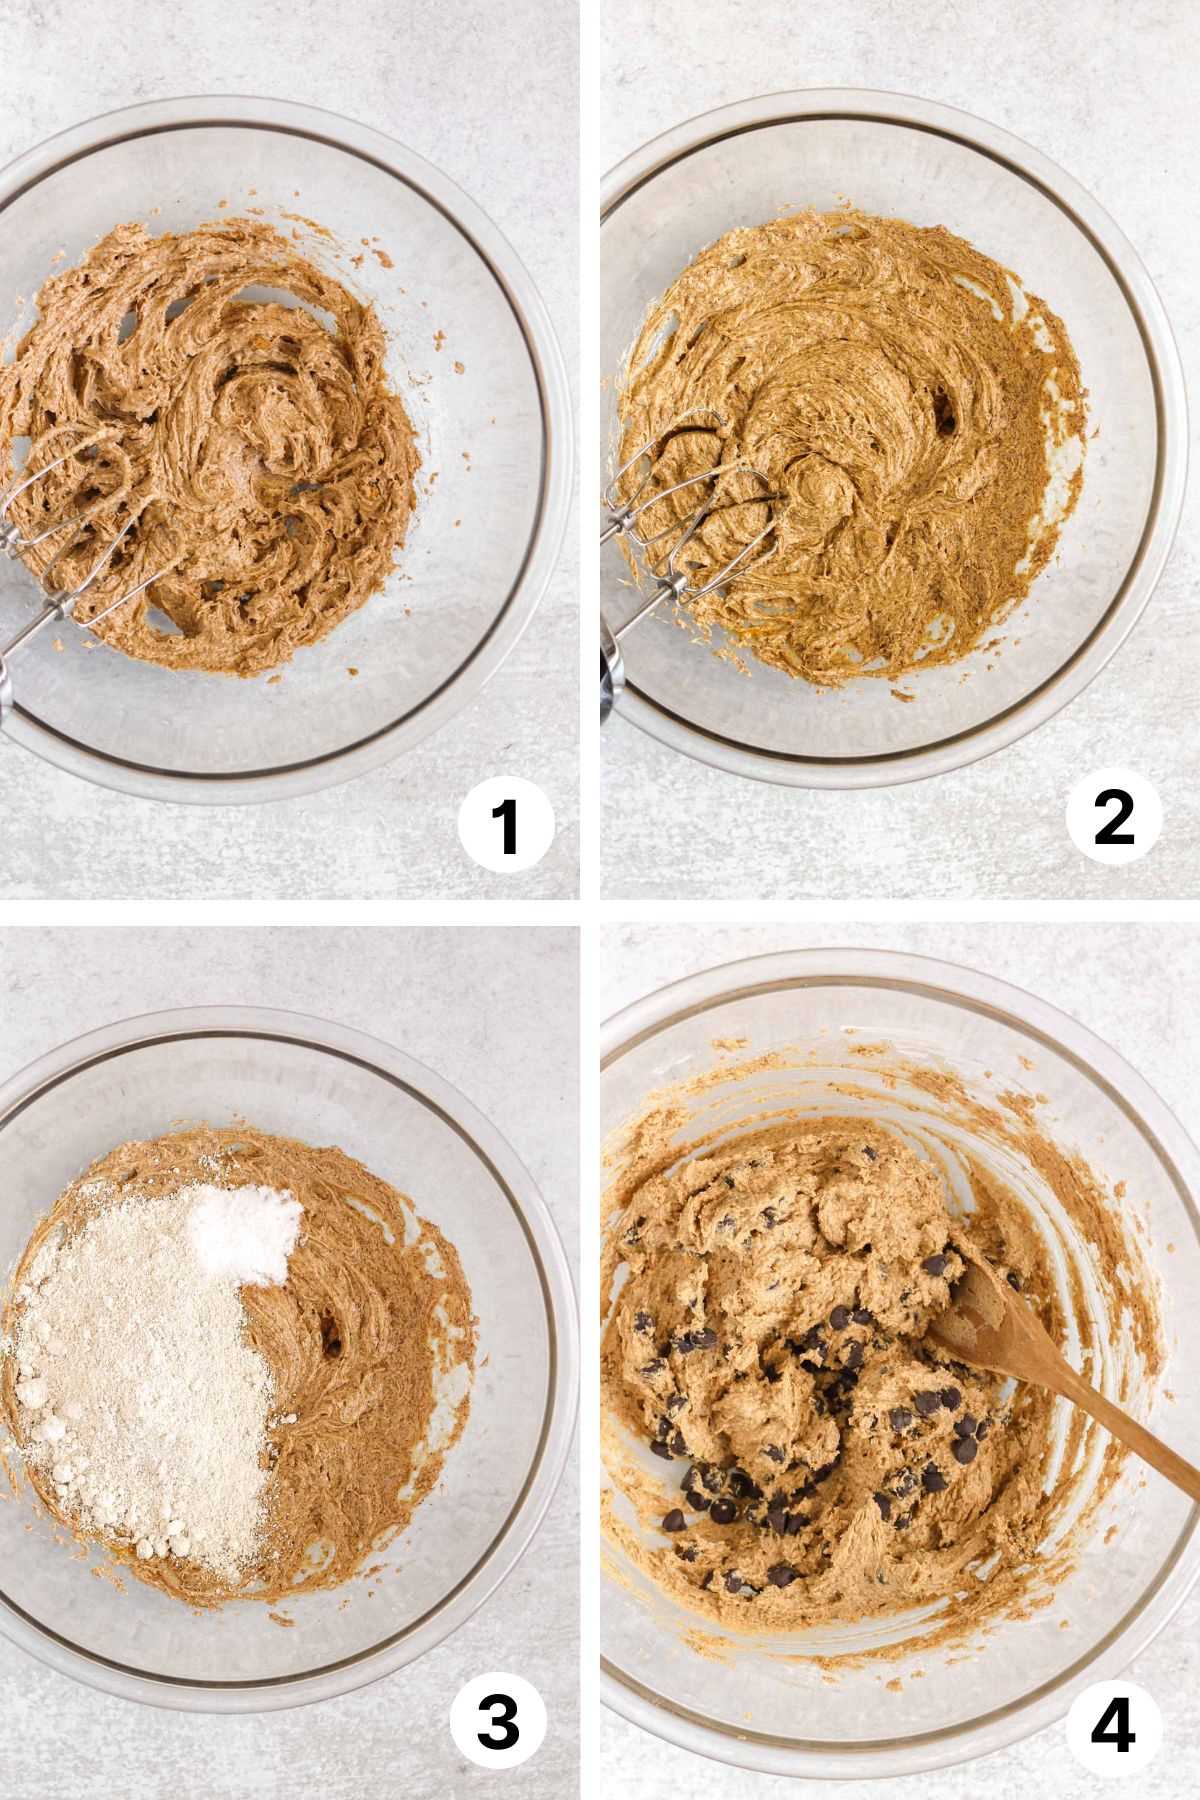 Process shots for making oat flour cookie dough. 